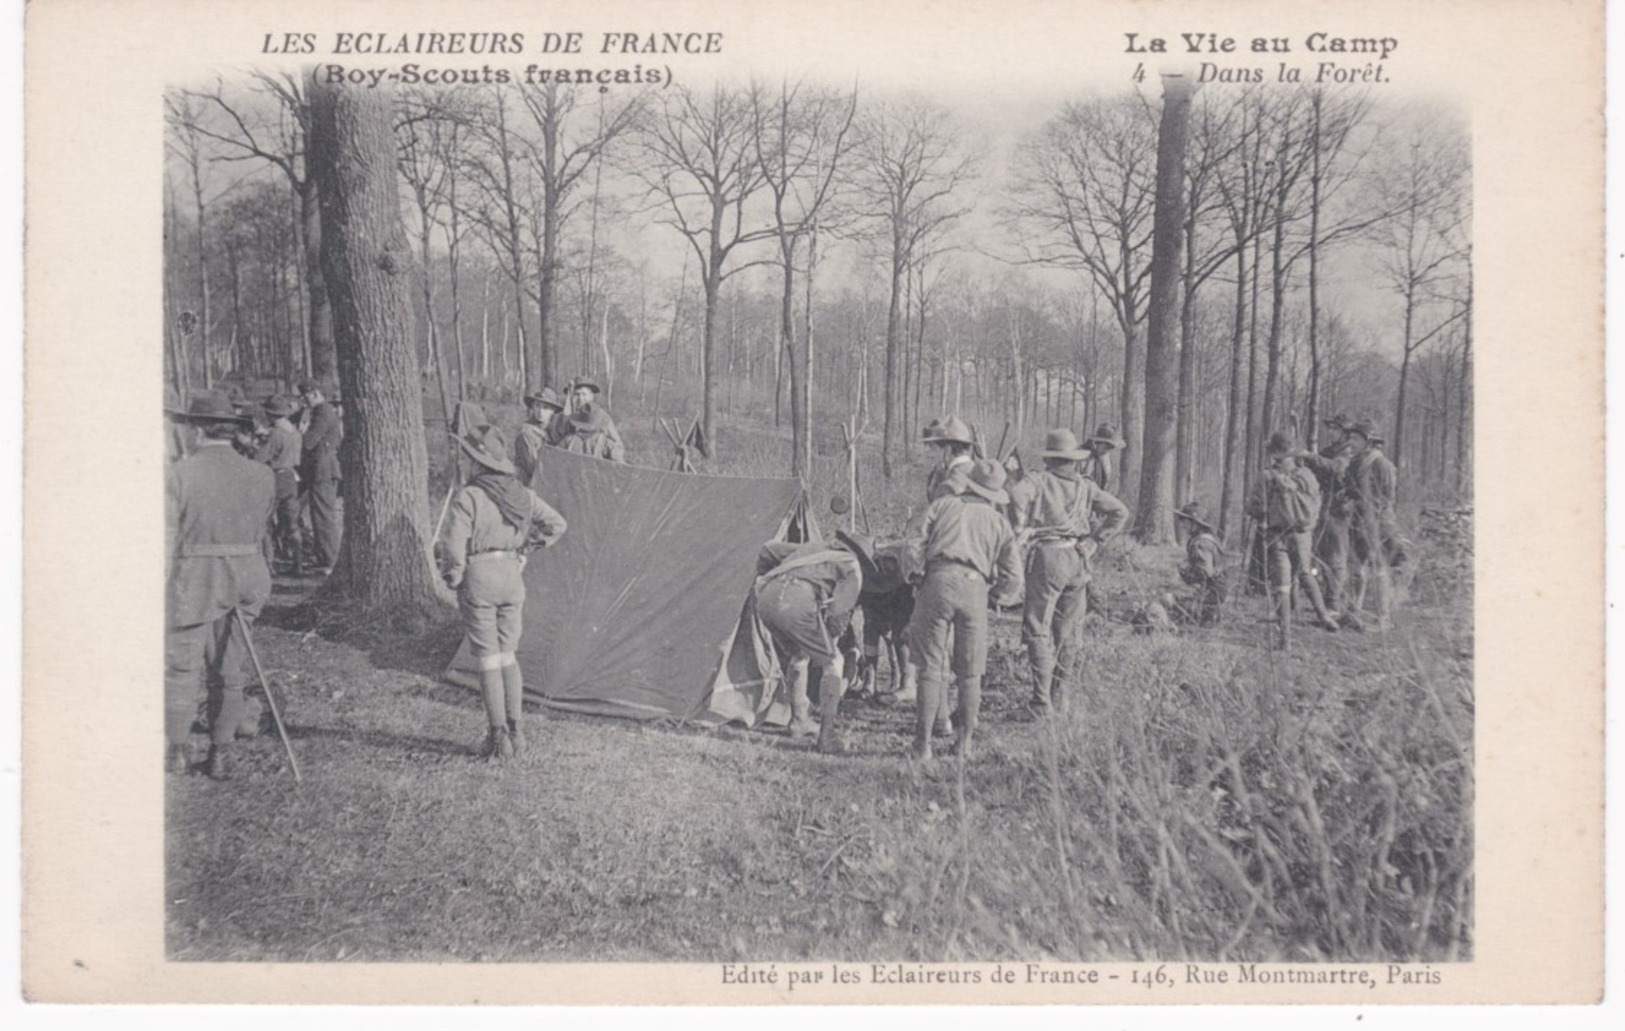 Les Eclaireurs De France - Boy-Scouts Français - La Vie Au Camp - Dans La Forêt - Ed. Eclaireurs, Paris - Scoutisme